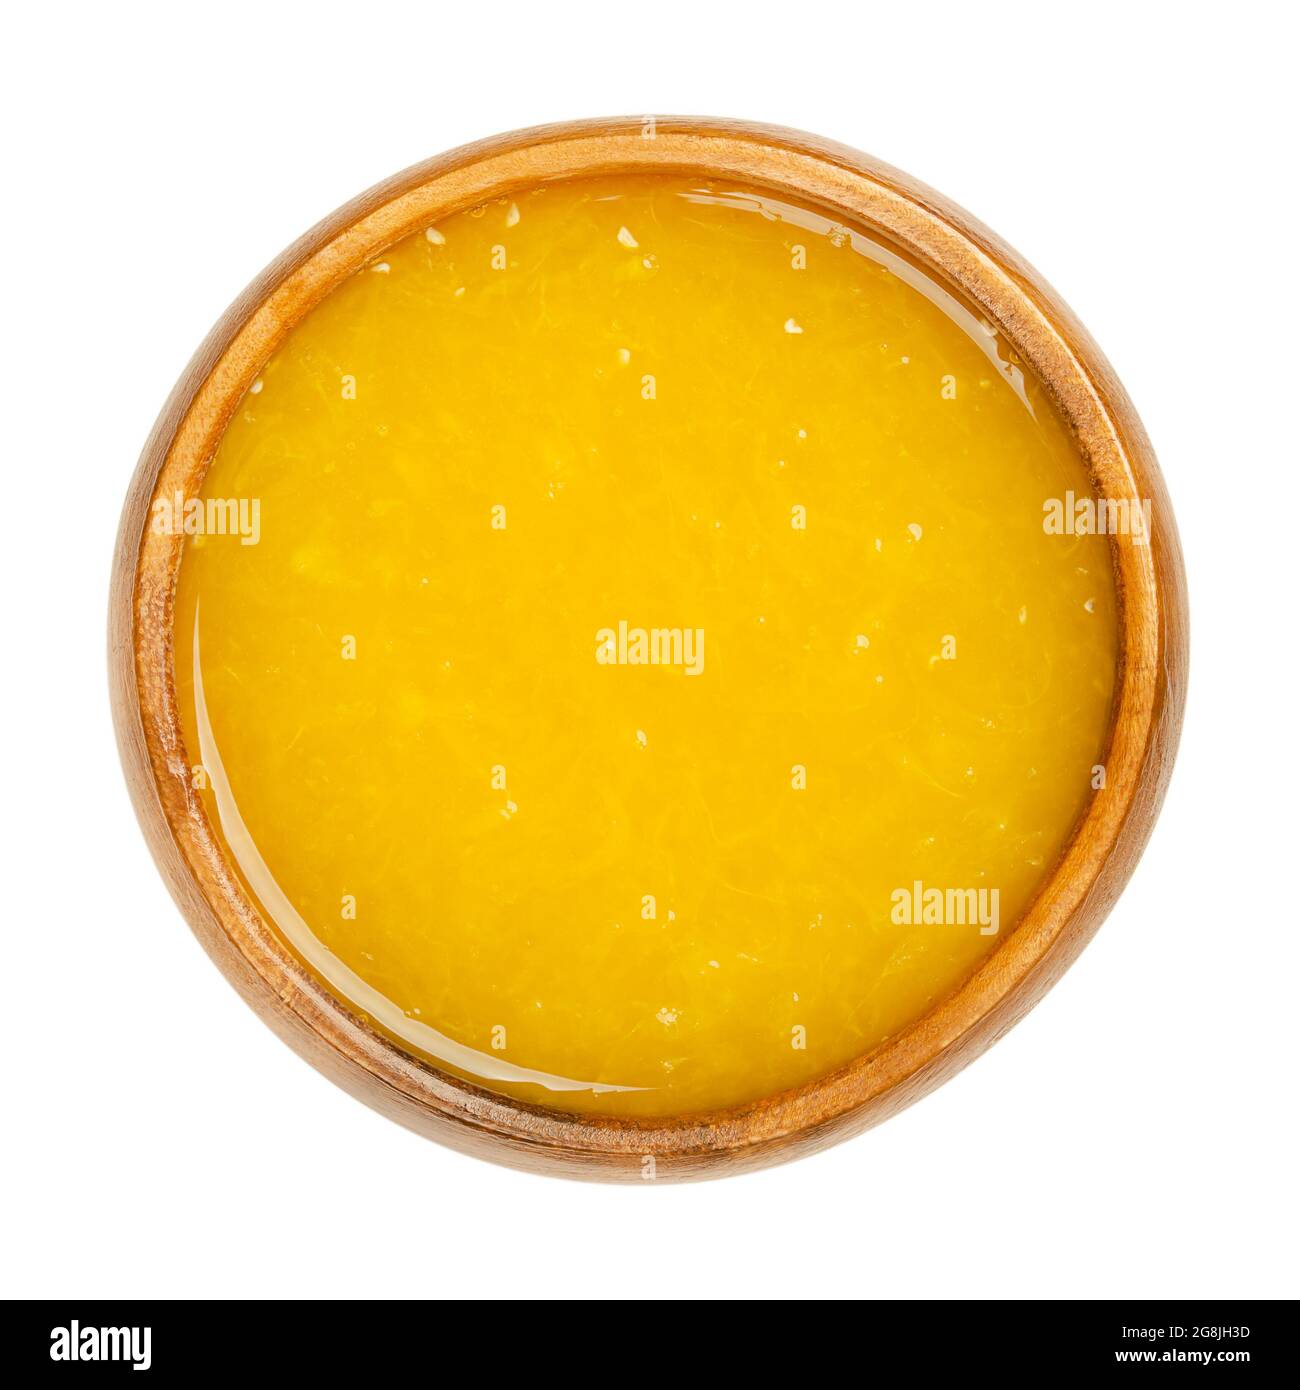 Succo d'arancia appena spremuto con polpa di frutta in un recipiente di legno. Succo d'arancia appena spremuto, un dolce rinfresco di colore giallo intenso. Foto Stock